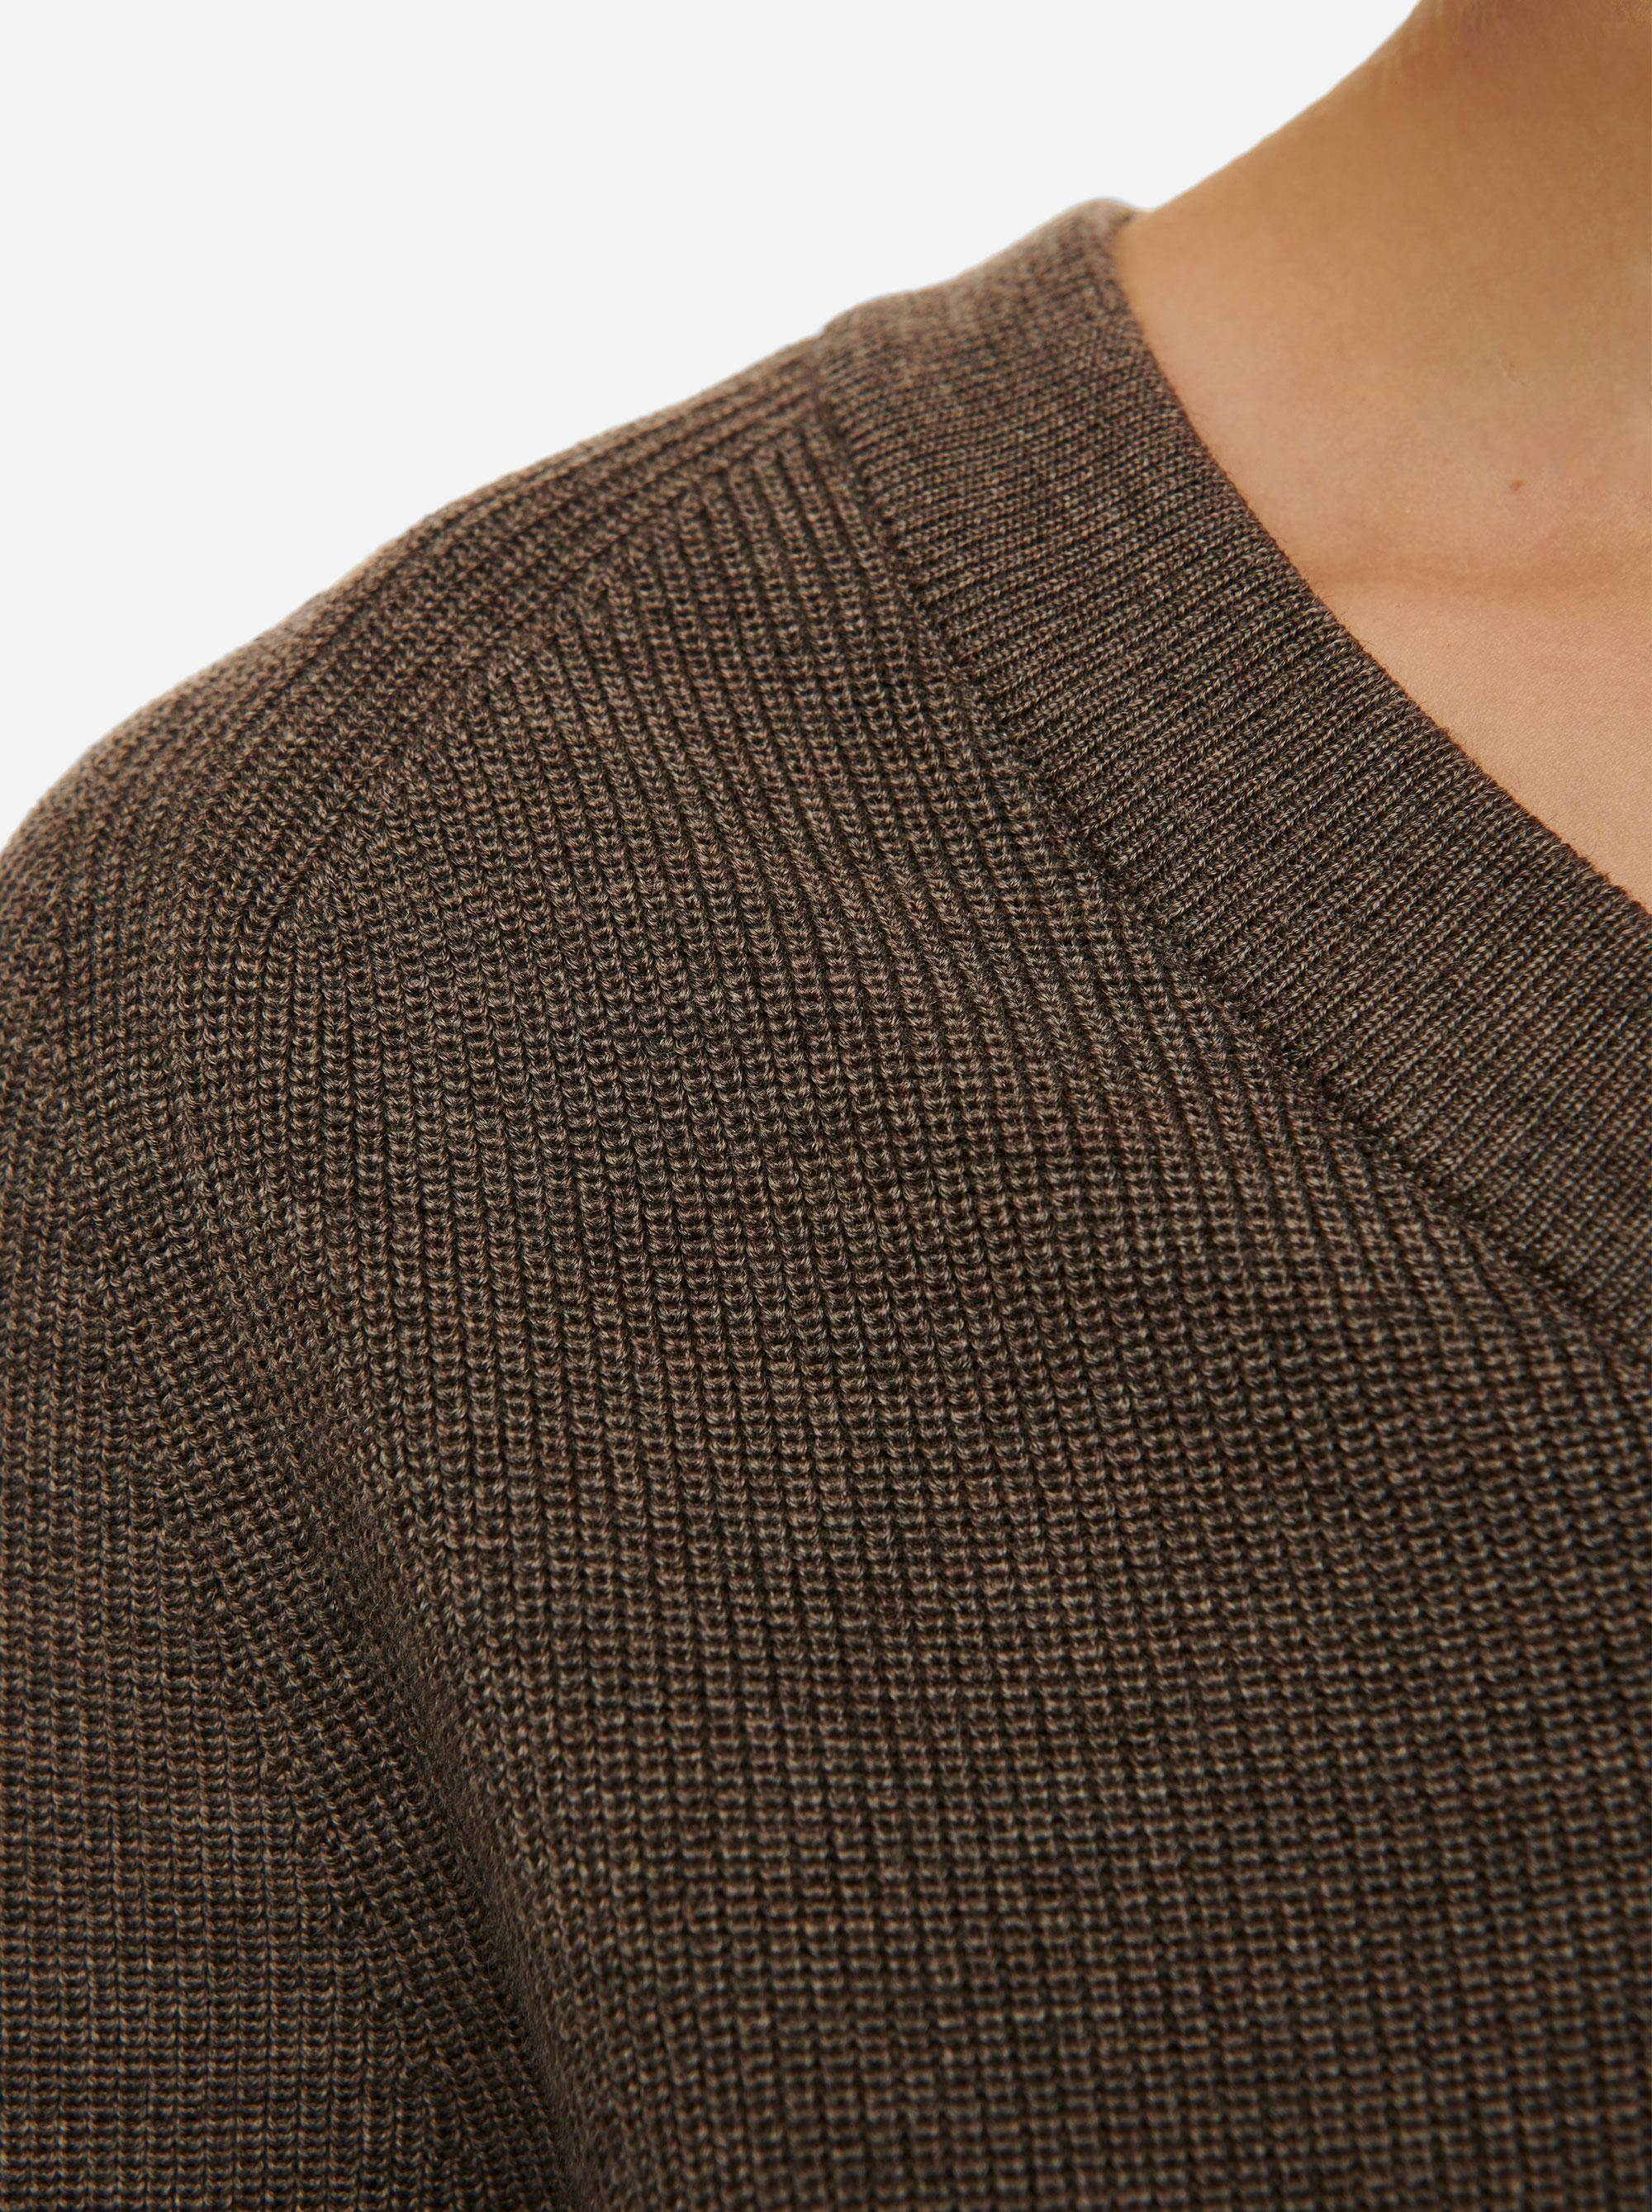 Teym - V-Neck - The Merino Sweater - Women - Grey - 2